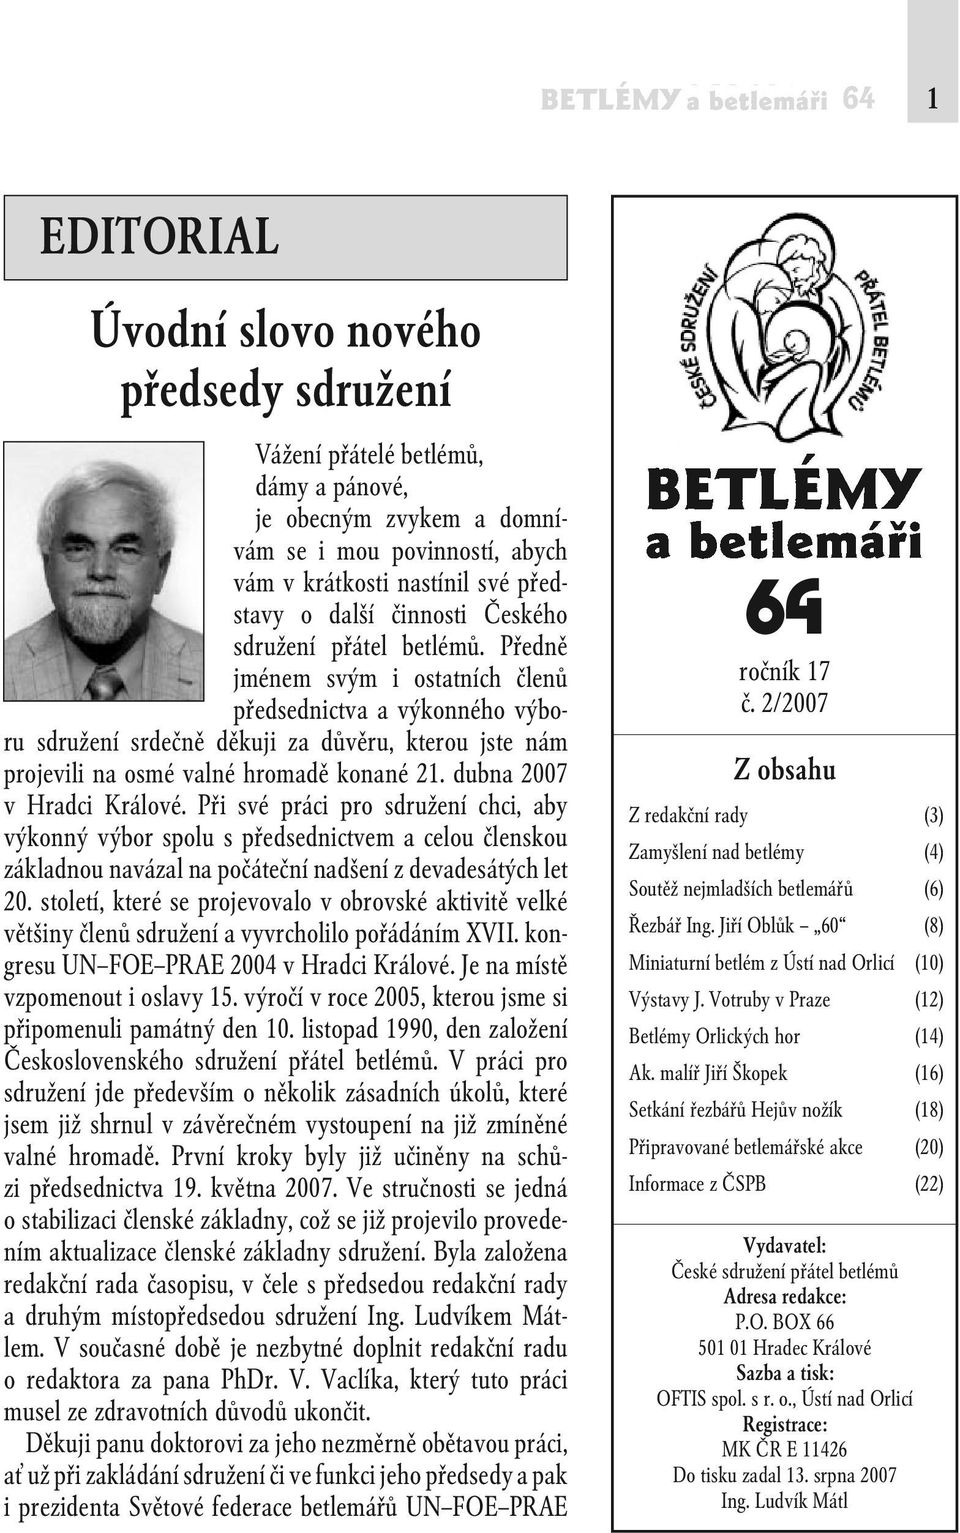 Předně jménem svým i ostatních členů předsednictva a výkonného výboru sdružení srdečně děkuji za důvěru, kterou jste nám projevili na osmé valné hromadě konané 21. dubna 2007 v Hradci Králové.